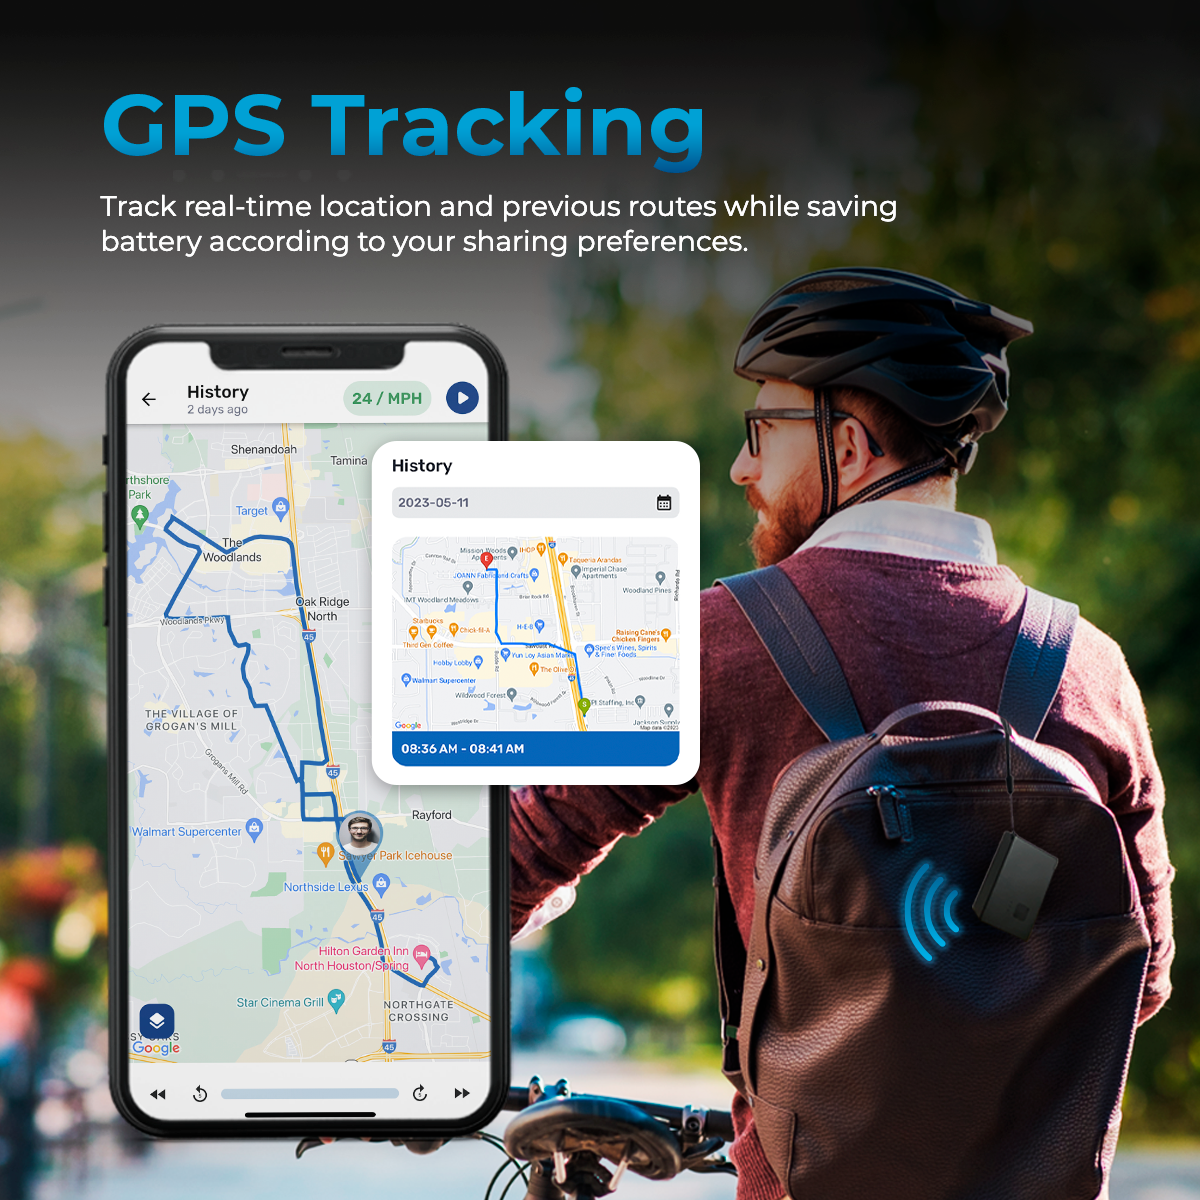 Rastreador GPS portátil AutoSky - Modelo: APT-110 - Tamaño mediano